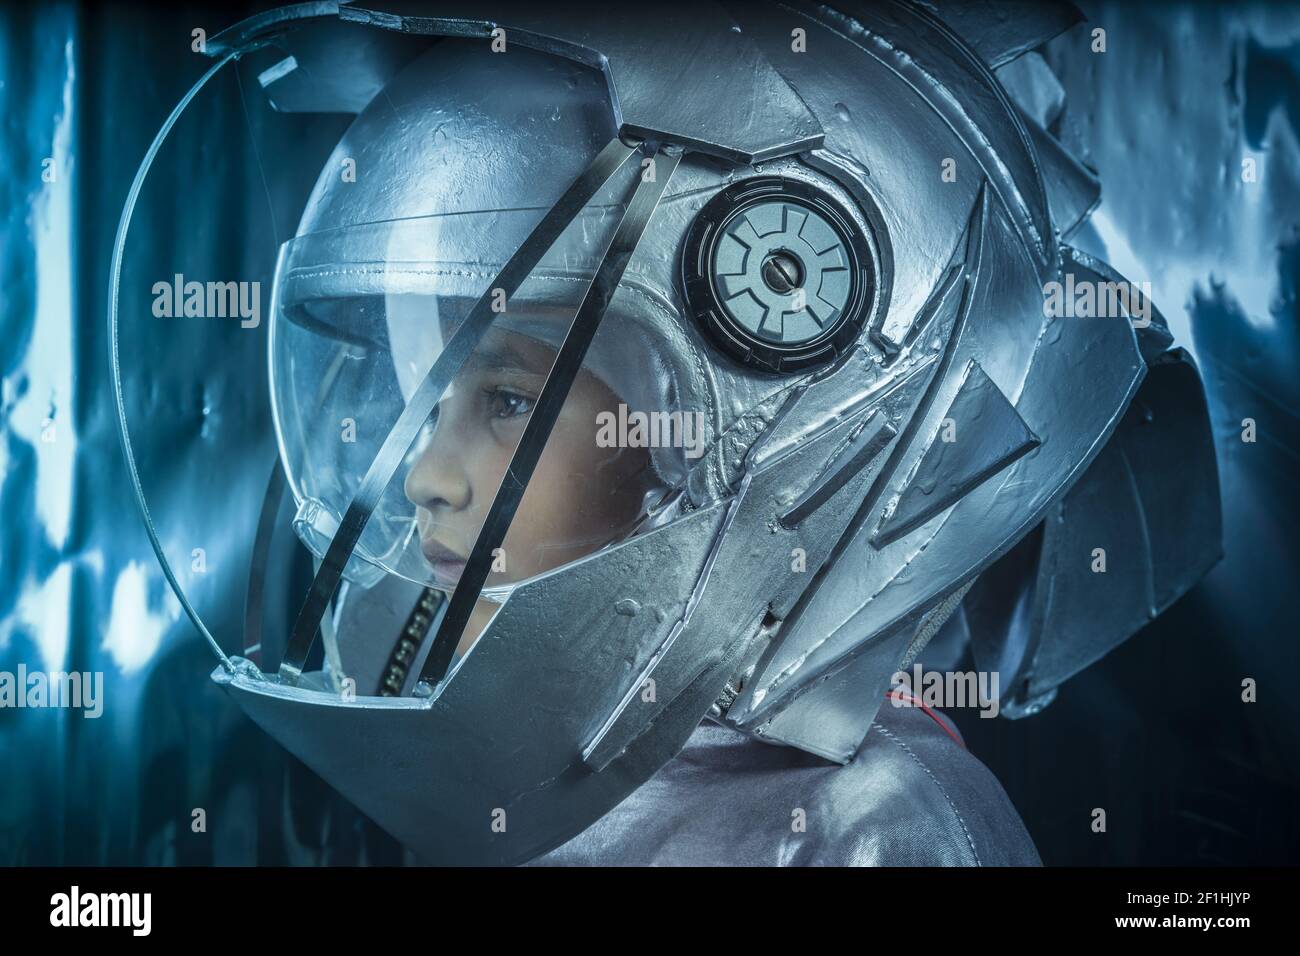 Stolz, junge spielen um ein Astronaut mit Weltraumhelm und Metall-Anzug Stockfoto